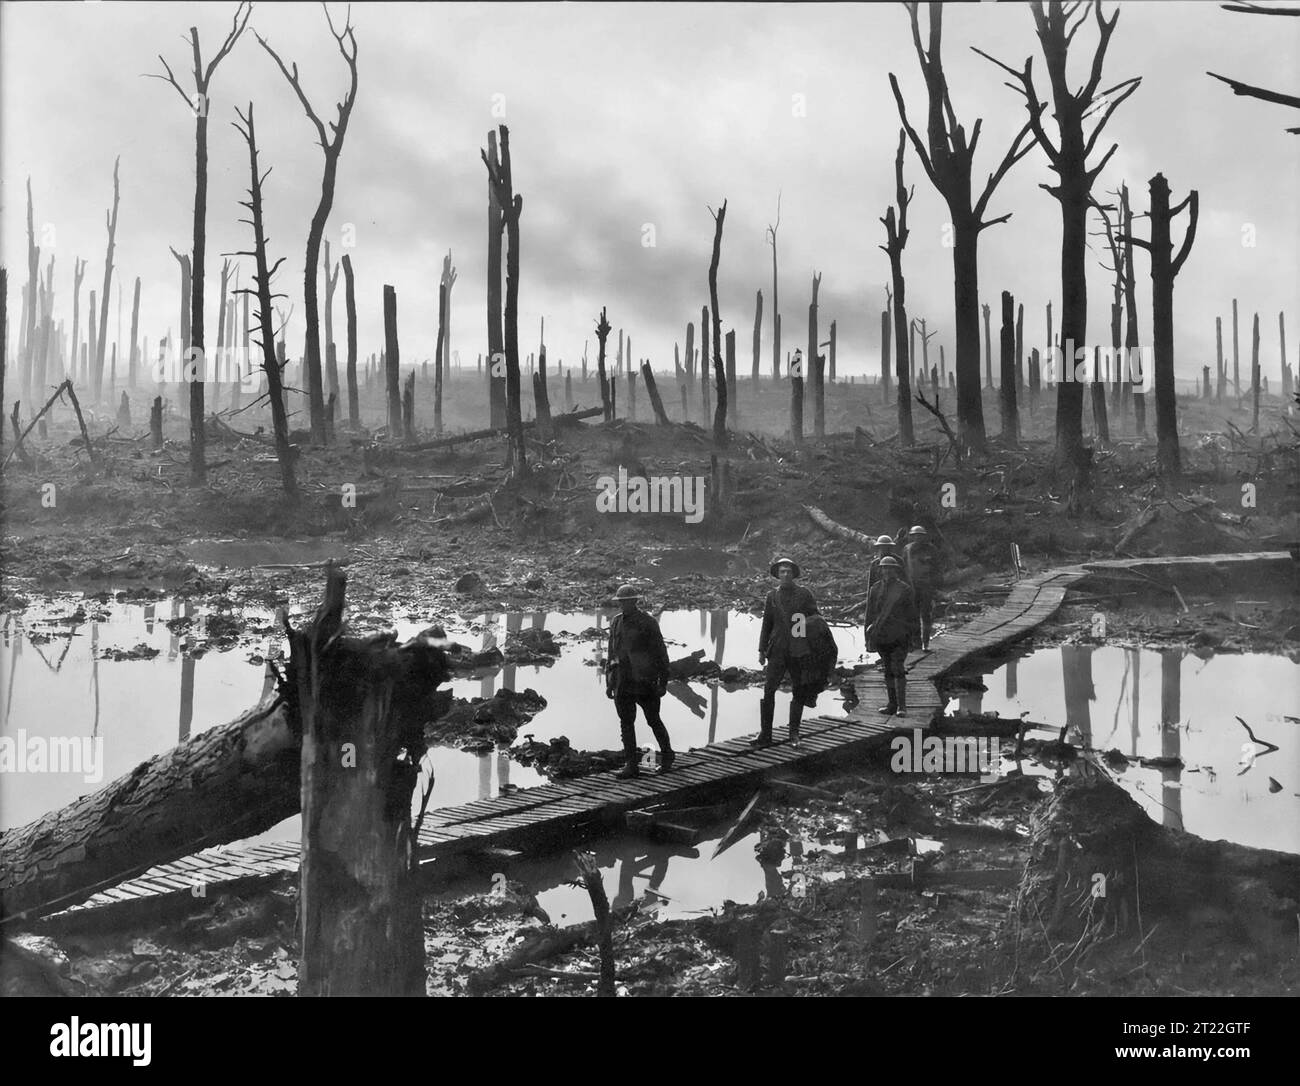 La troisième bataille d'Ypres (la bataille de Passchendaele). Soldats d'une brigade d'artillerie de campagne de la 4e division australienne sur une piste de duckboard passant par Chateau Wood, près de Hooge dans le saillant d'Ypres, le 29 octobre 1917. Photo de Frank Hurley. Banque D'Images